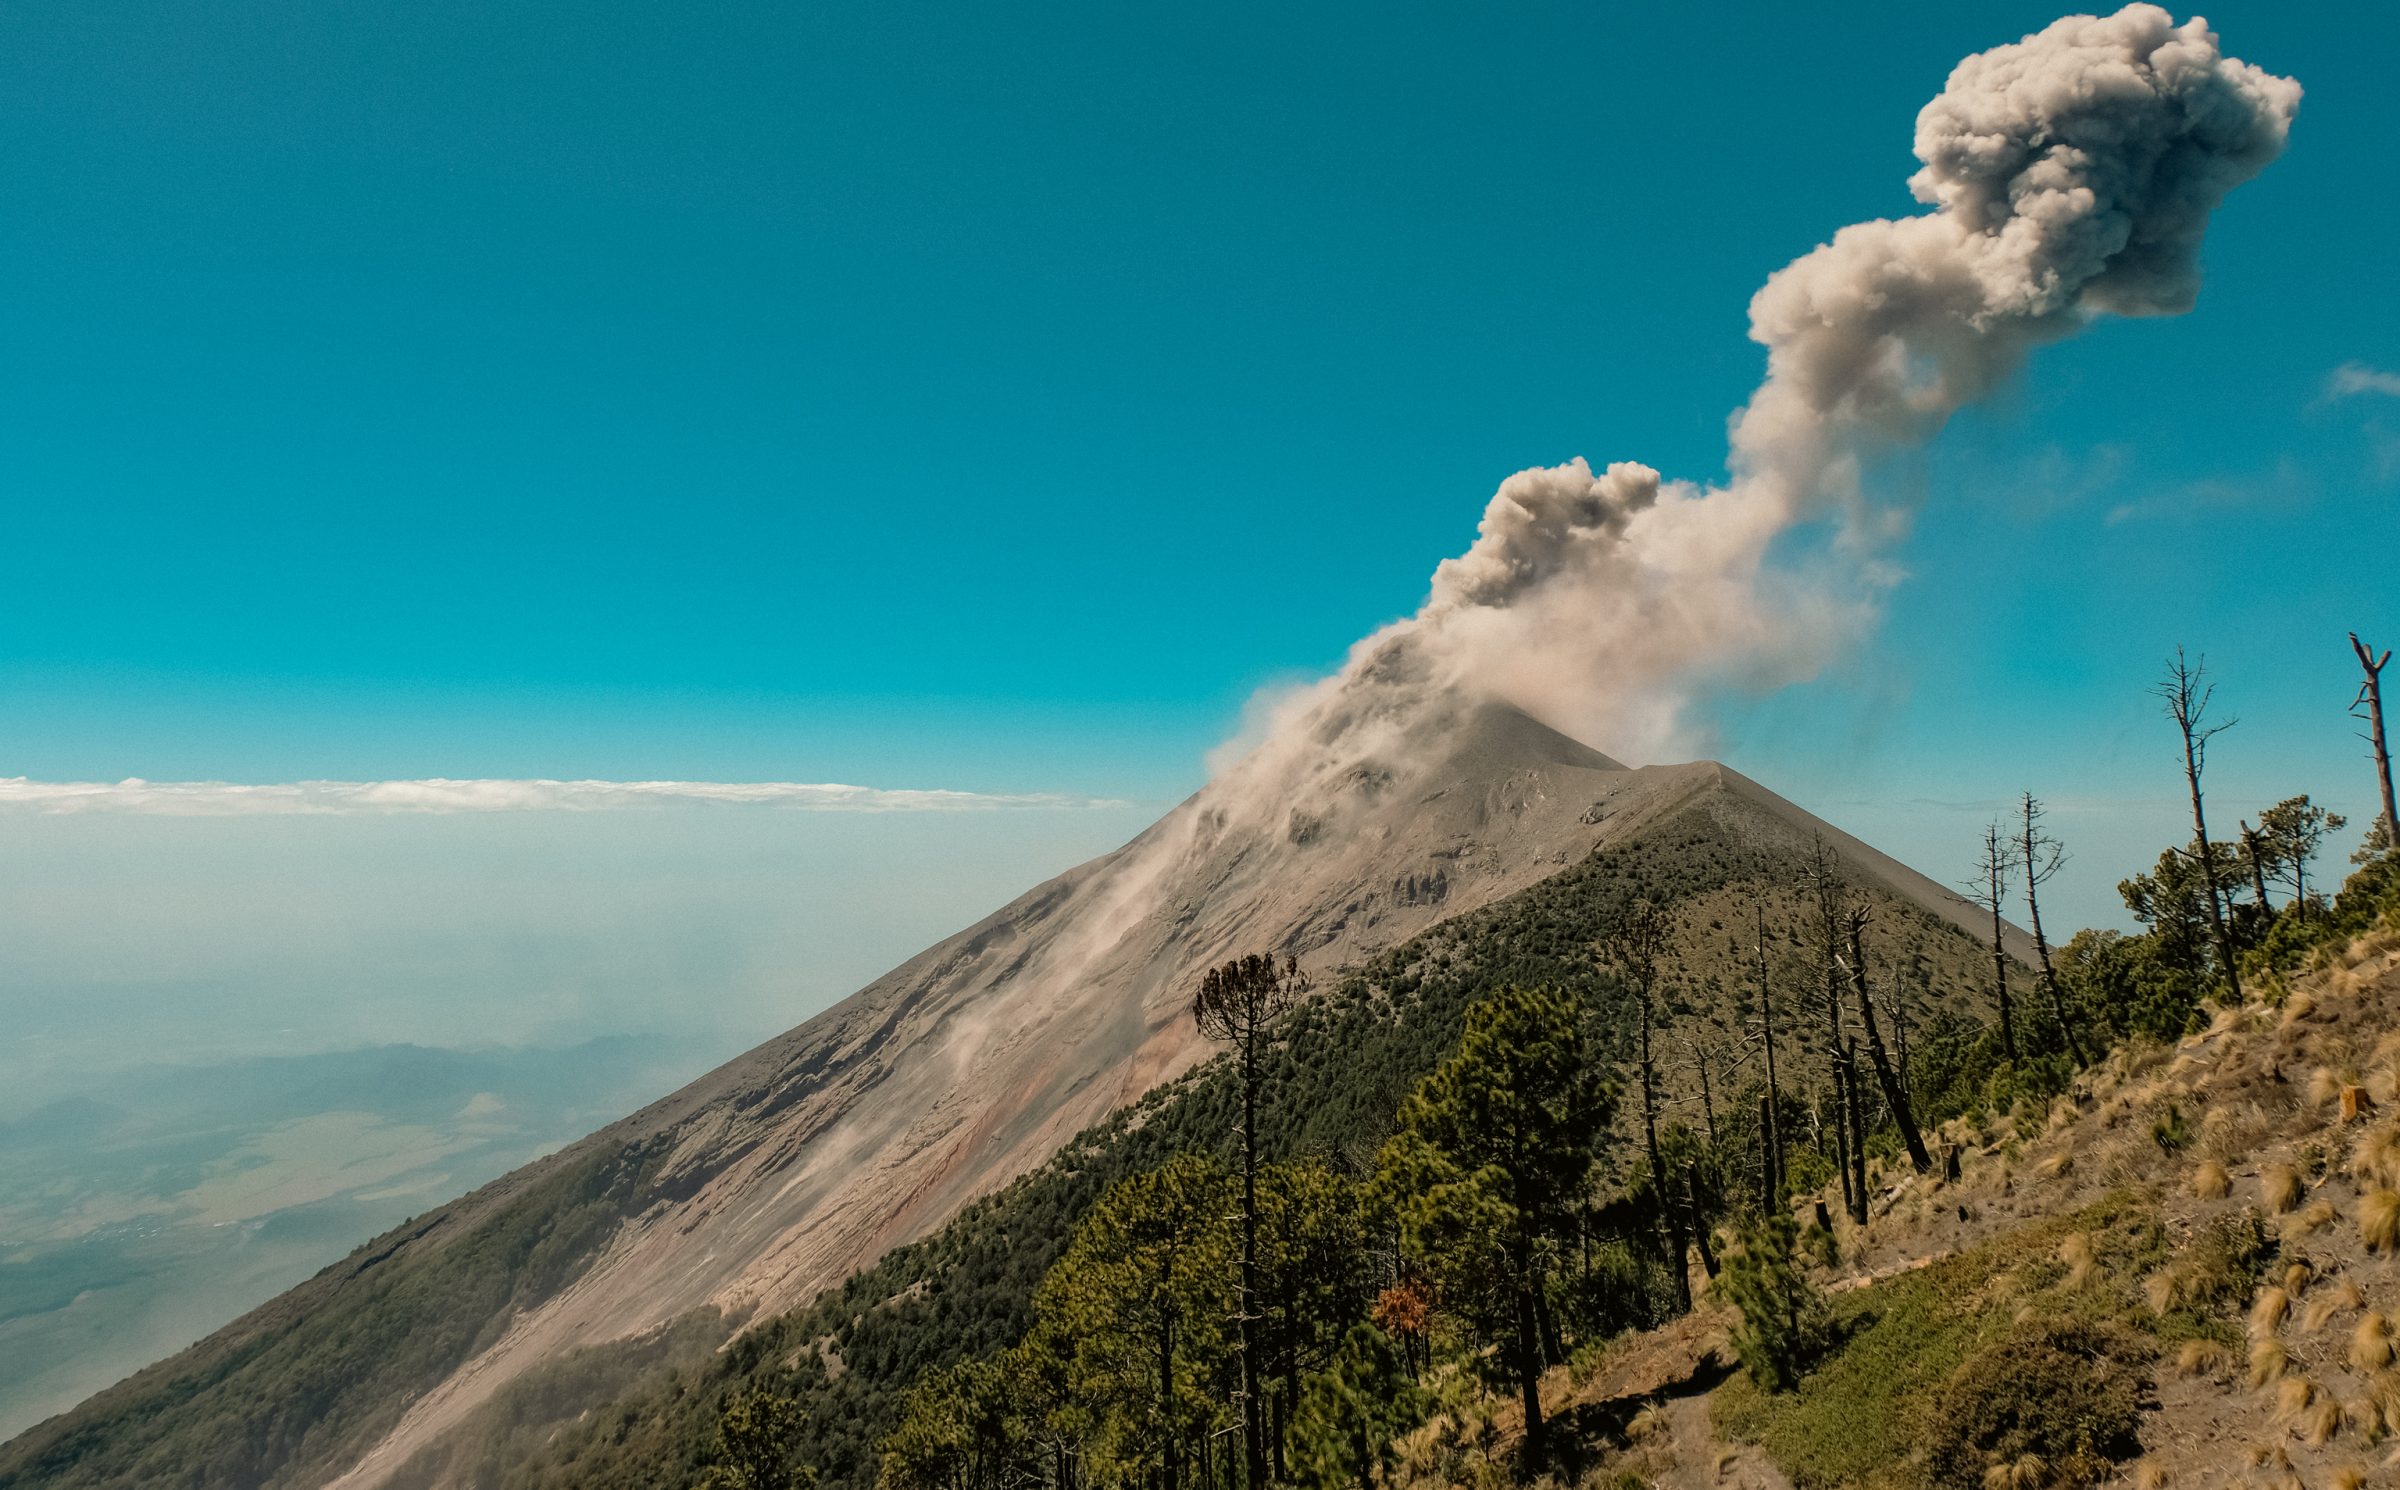 De uitbarstende Fuego vulkaan vanaf Base Camp op Acatenango